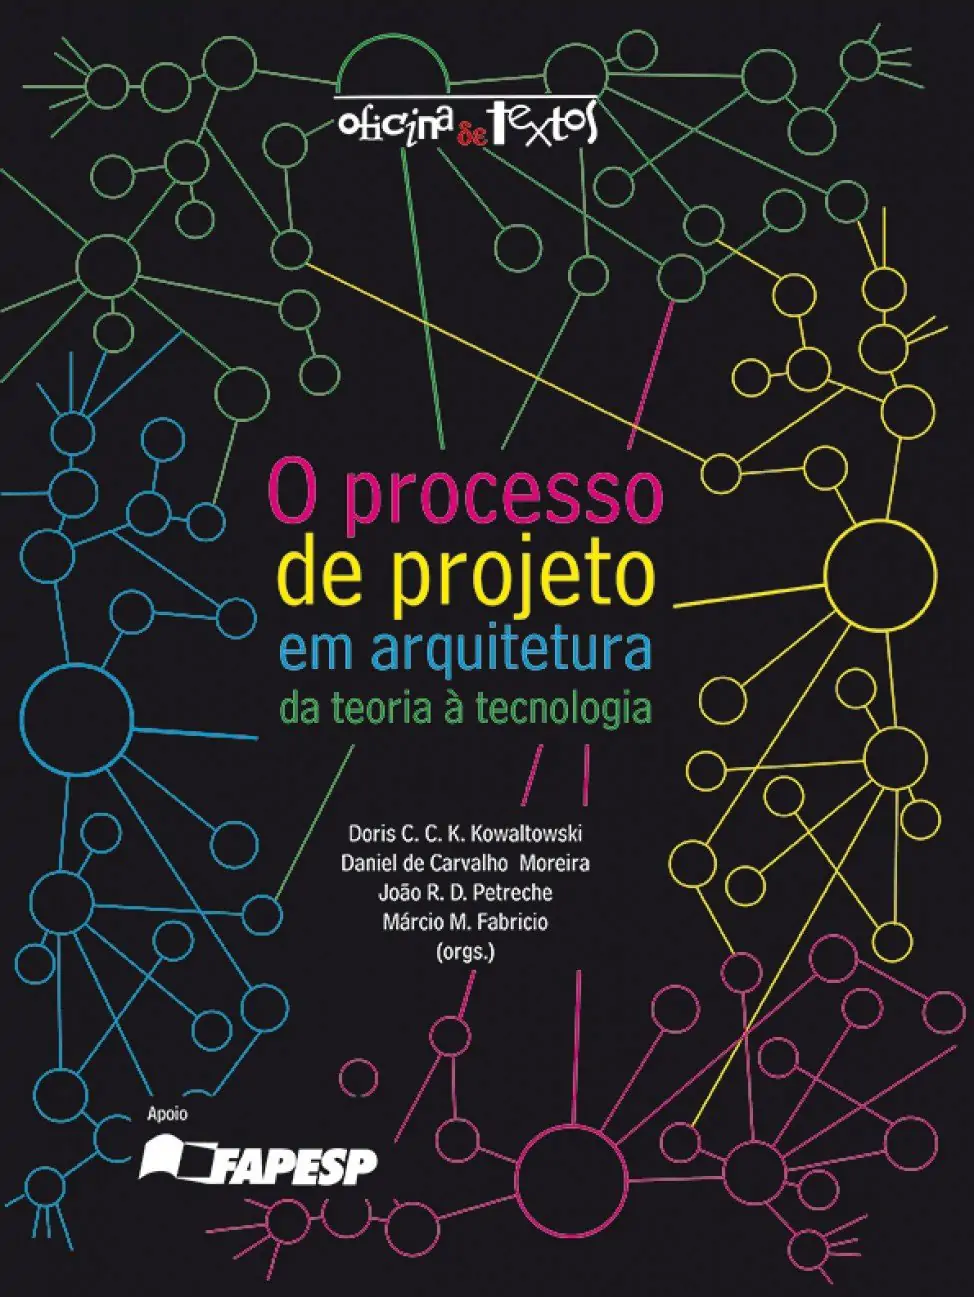 O Processo de Projeto em Arquitetura: da Teoria à Tecnologia - Doris C. C. K. Kowaltowski, Daniel de Carvalho Moreira